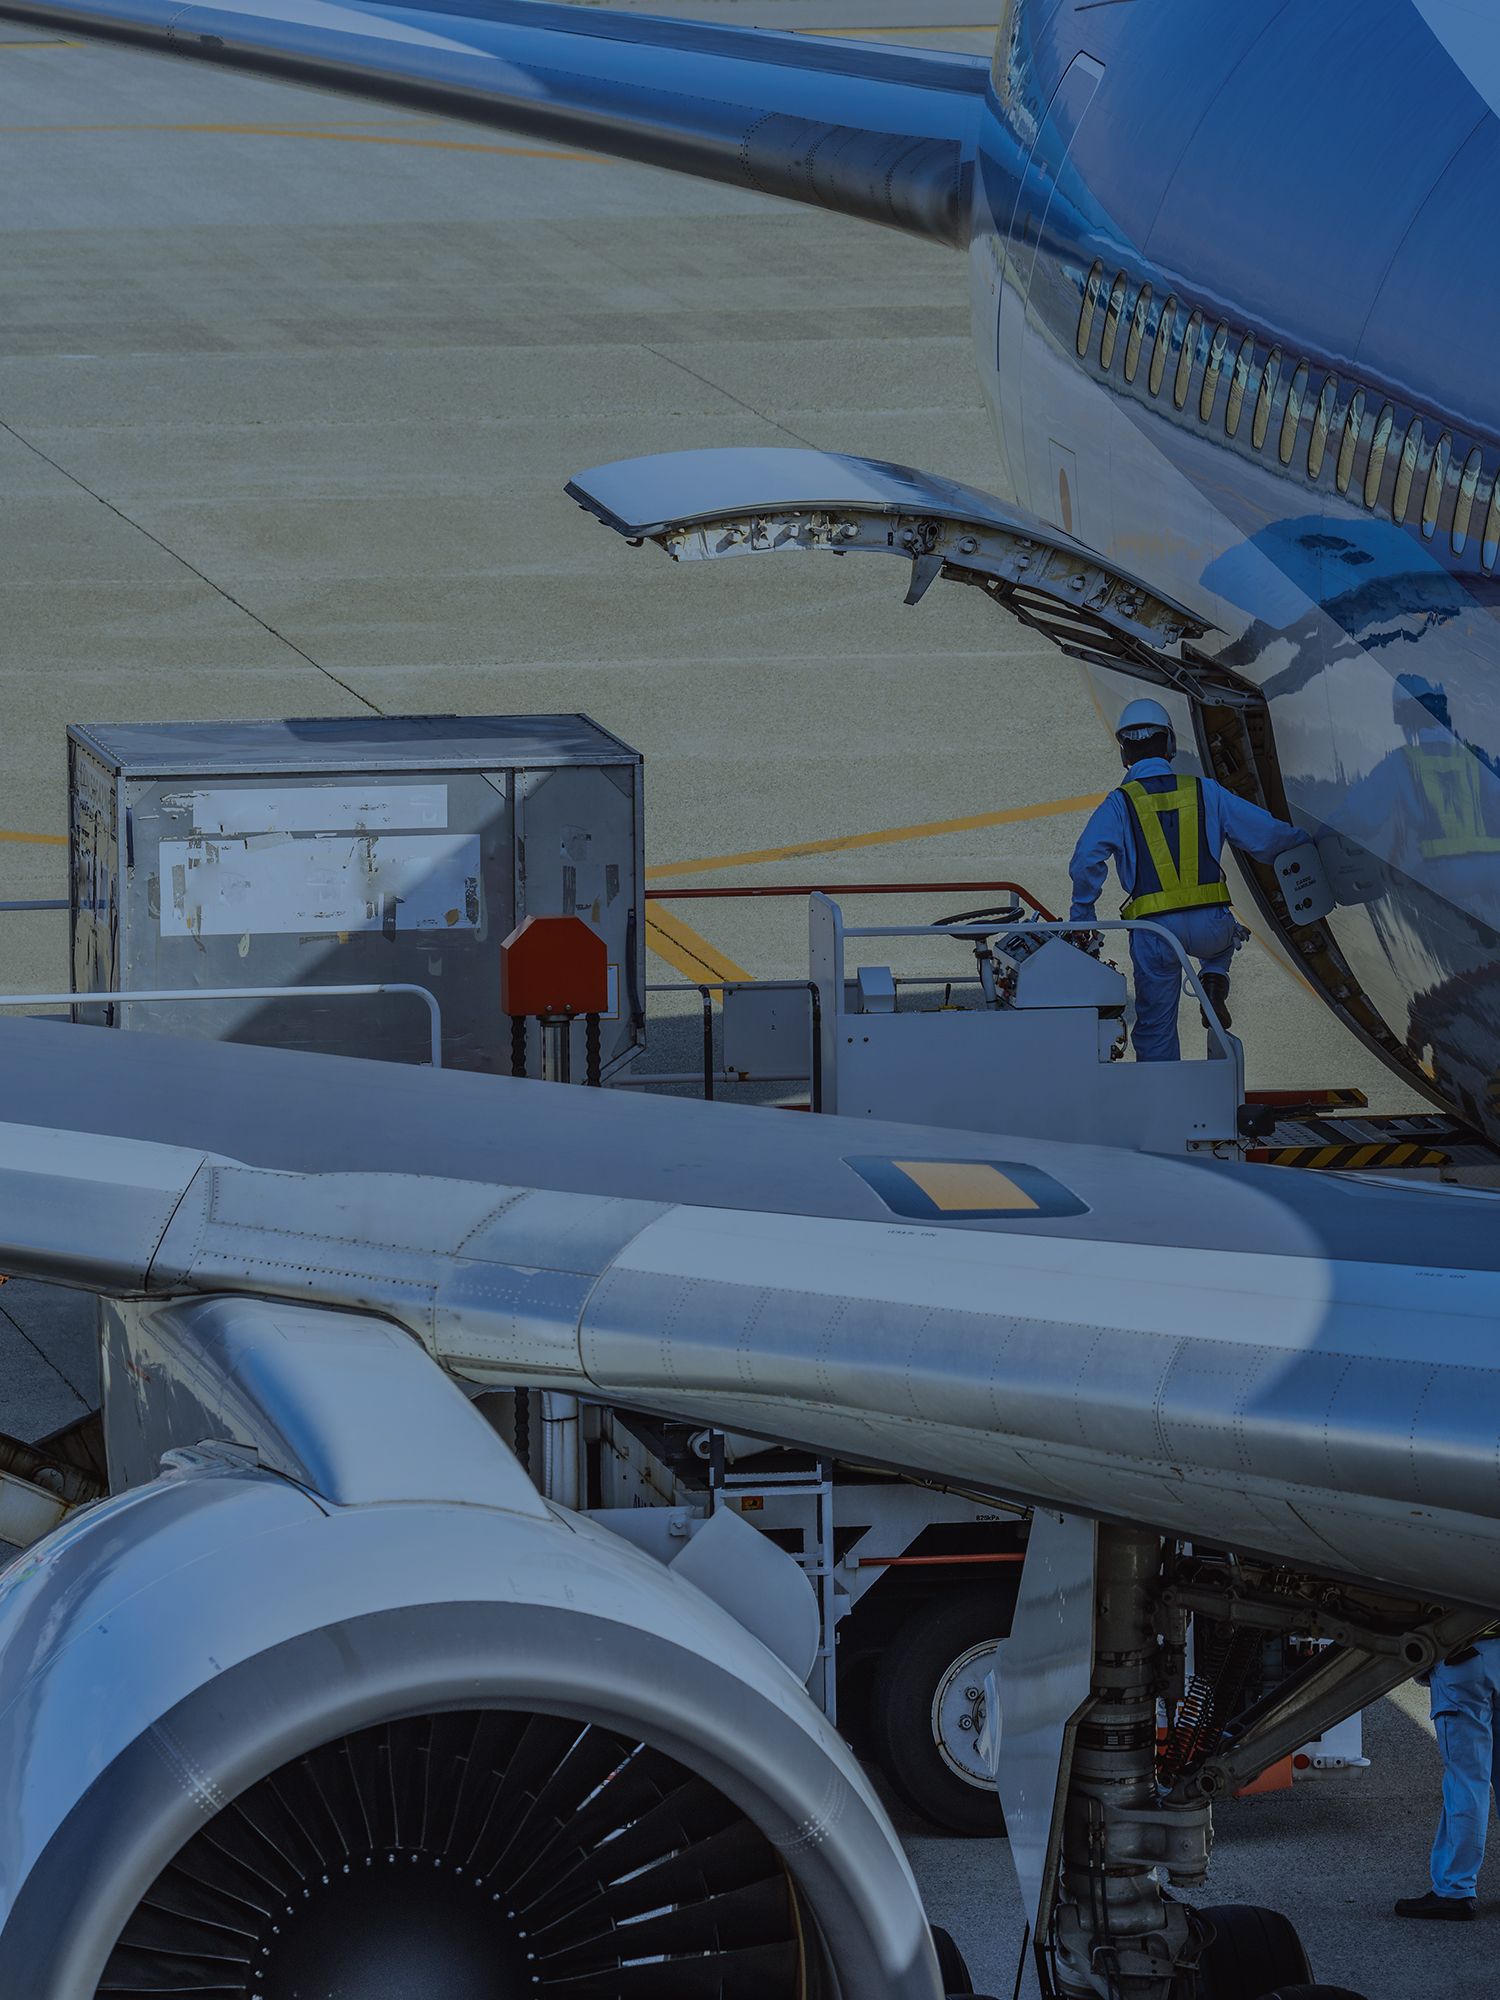 La carga aérea: un servicio que impulsa la economía y el comercio